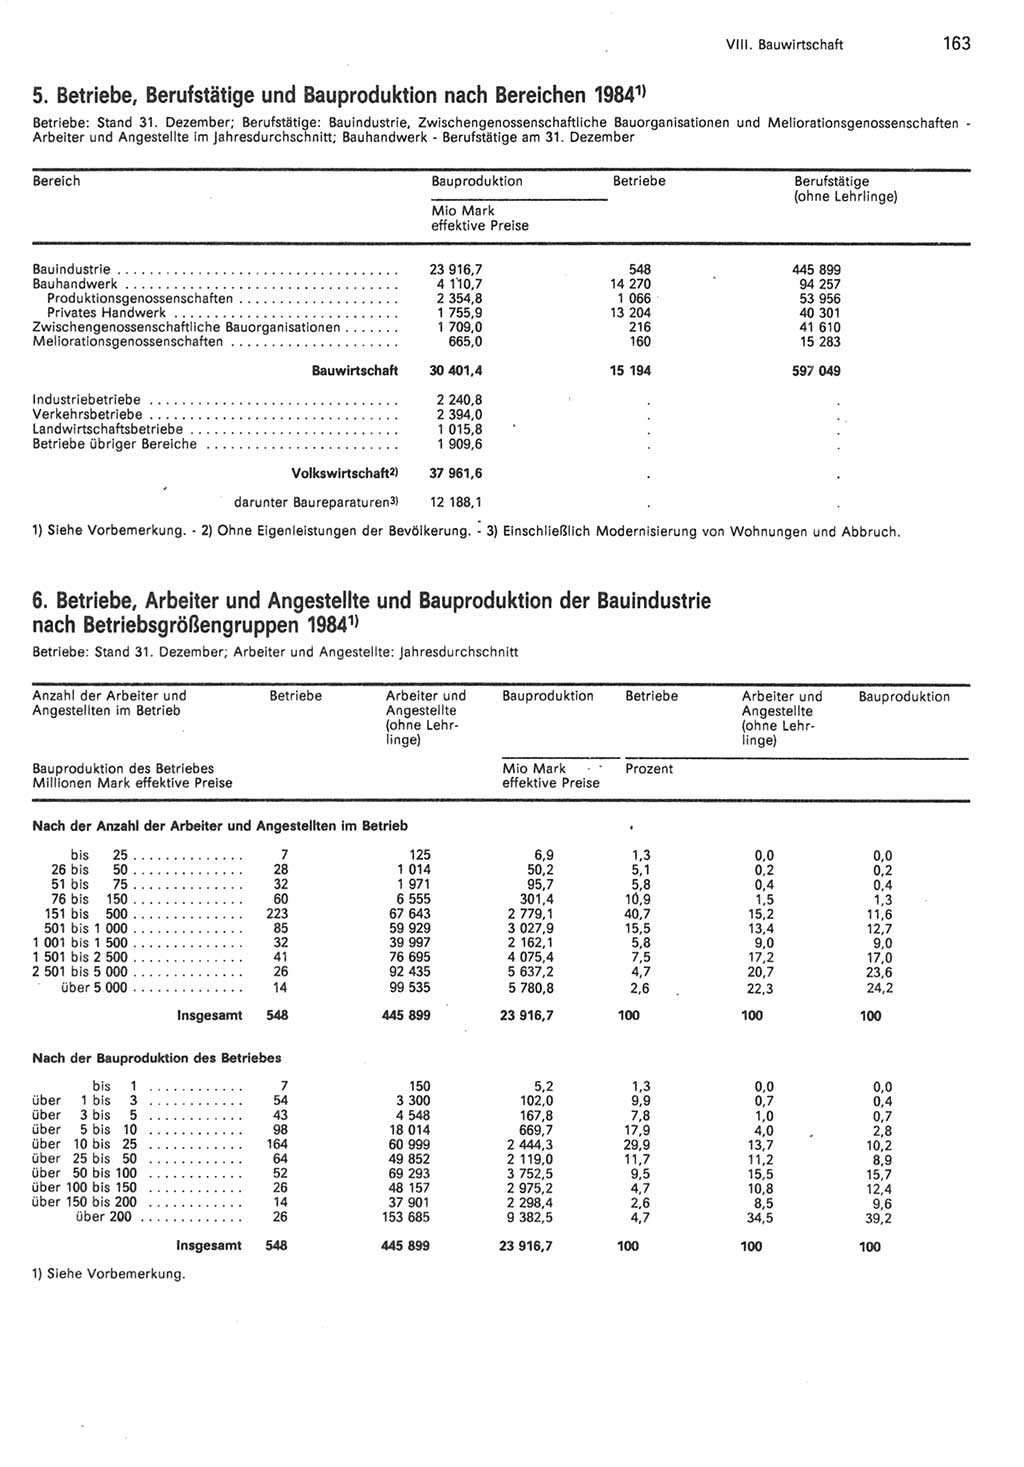 Statistisches Jahrbuch der Deutschen Demokratischen Republik (DDR) 1985, Seite 163 (Stat. Jb. DDR 1985, S. 163)